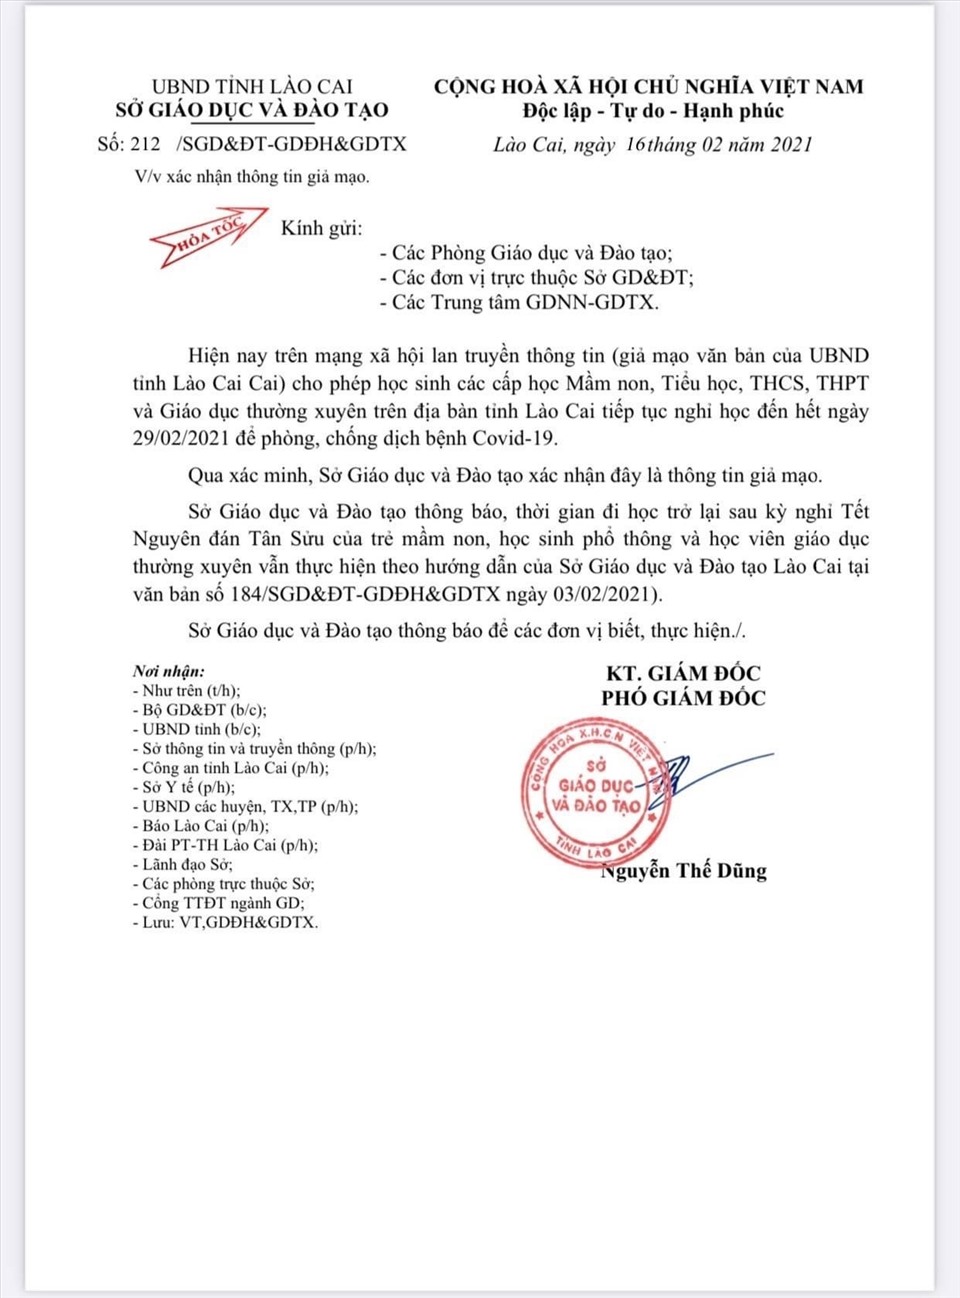 Sở Giáo dục và Đào tạo Lào Cai đã có văn bản hỏa tốc đính chính sự việc.